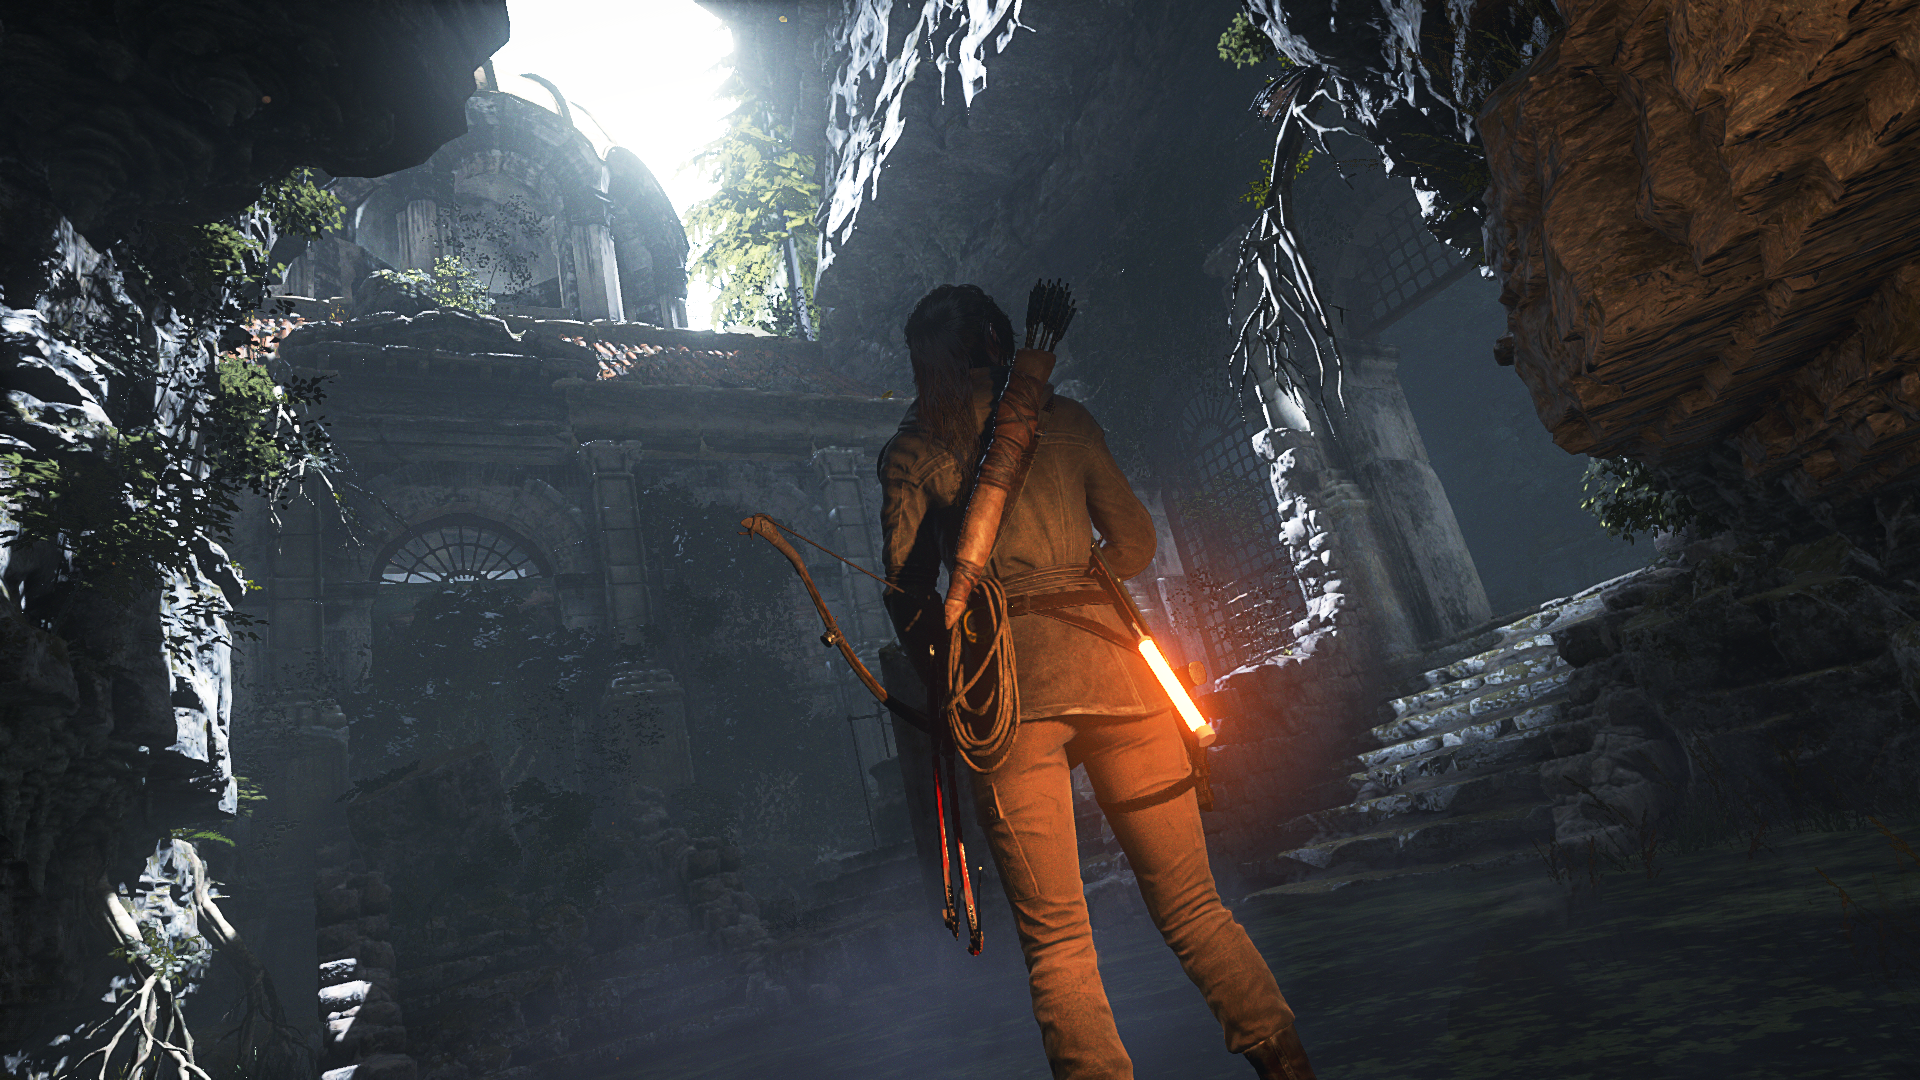 Immagine pubblicata in relazione al seguente contenuto: Disponibile la prima patch del game Rise of the Tomb Raider per PC | Nome immagine: news23748_Rise-of-the-Tomb-Raider-Screenshot_1.png